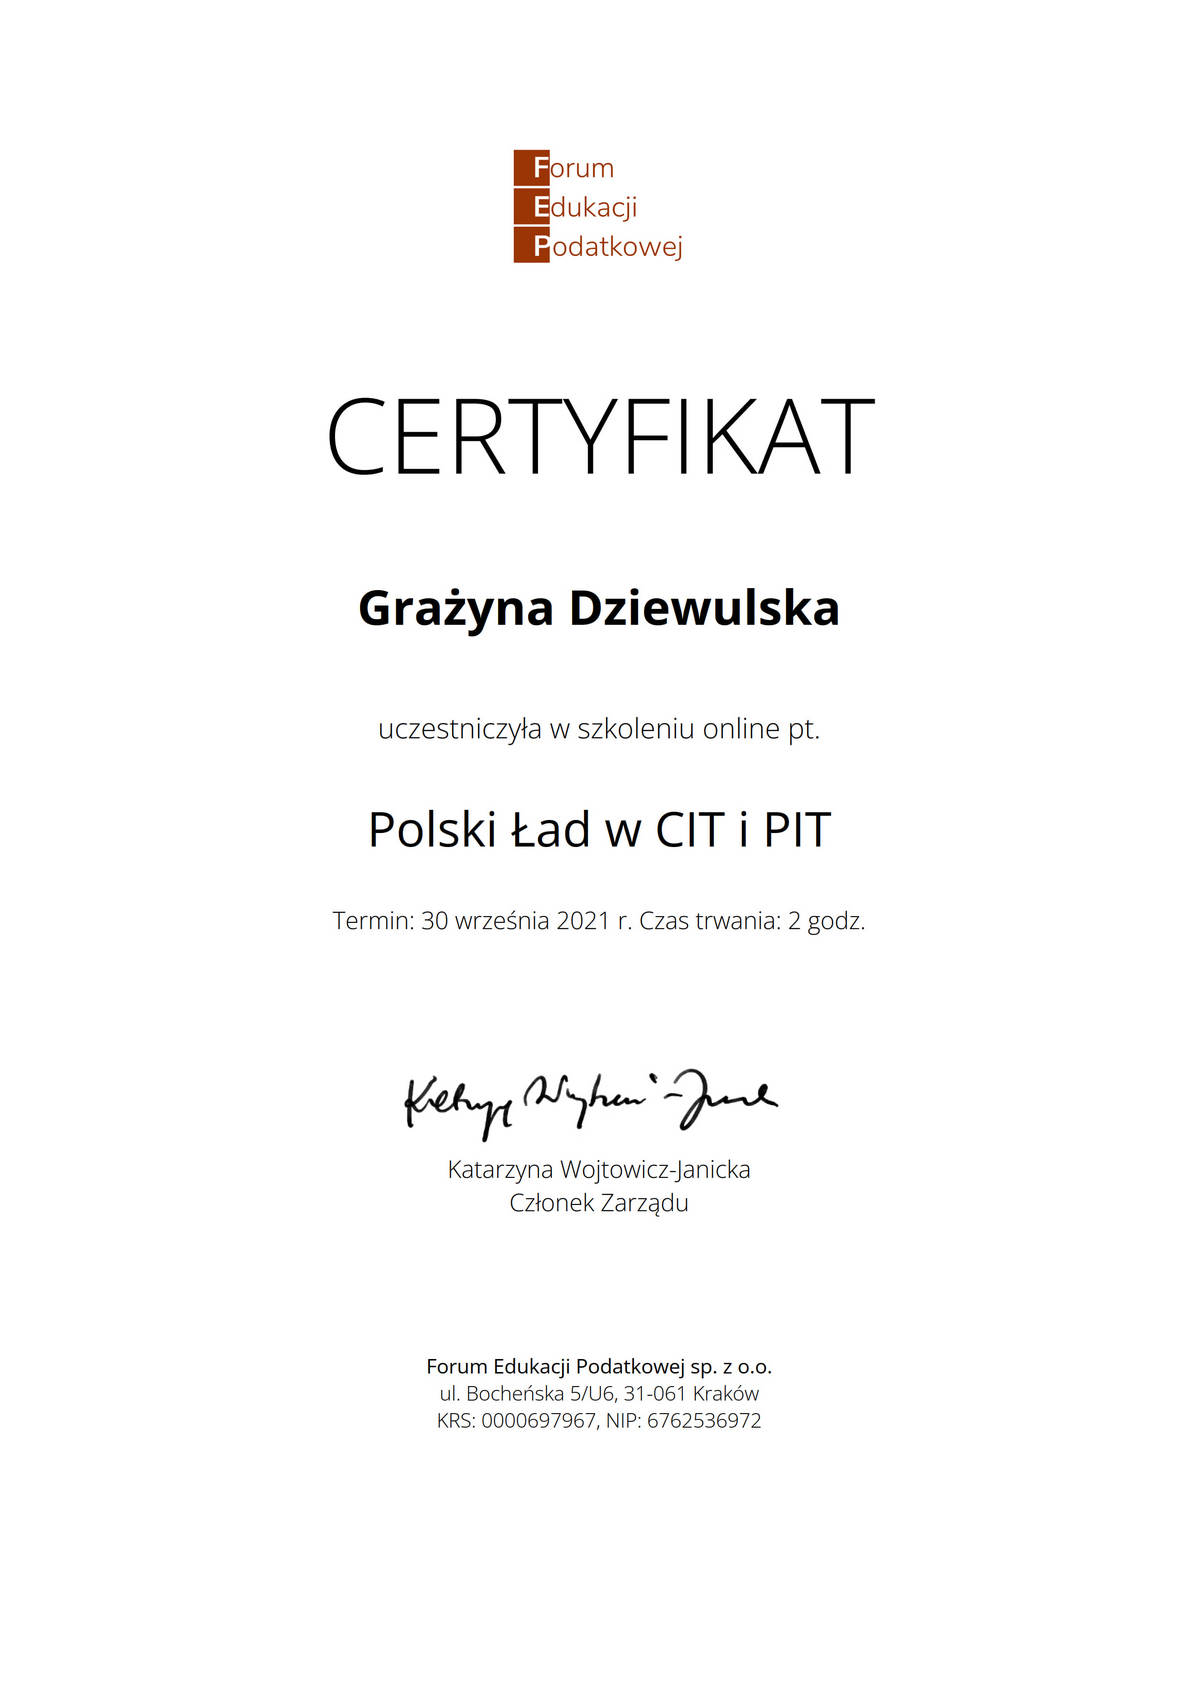 Polski Ład w CIT i PIT